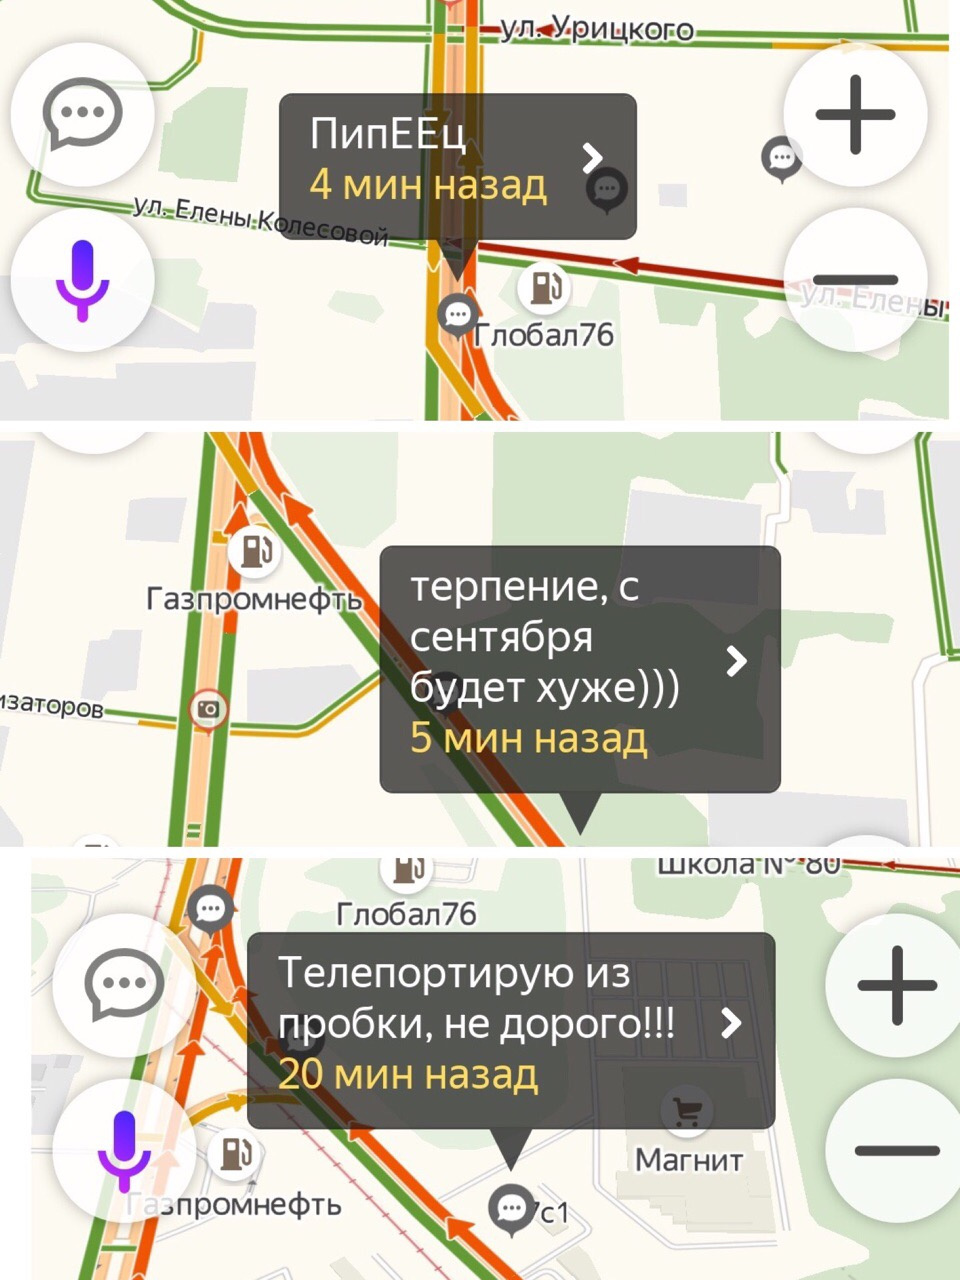 Водители пишут и с Ленинградского проспекта перед улицей Елены Колесовой, с которой тоже идёт поток машин